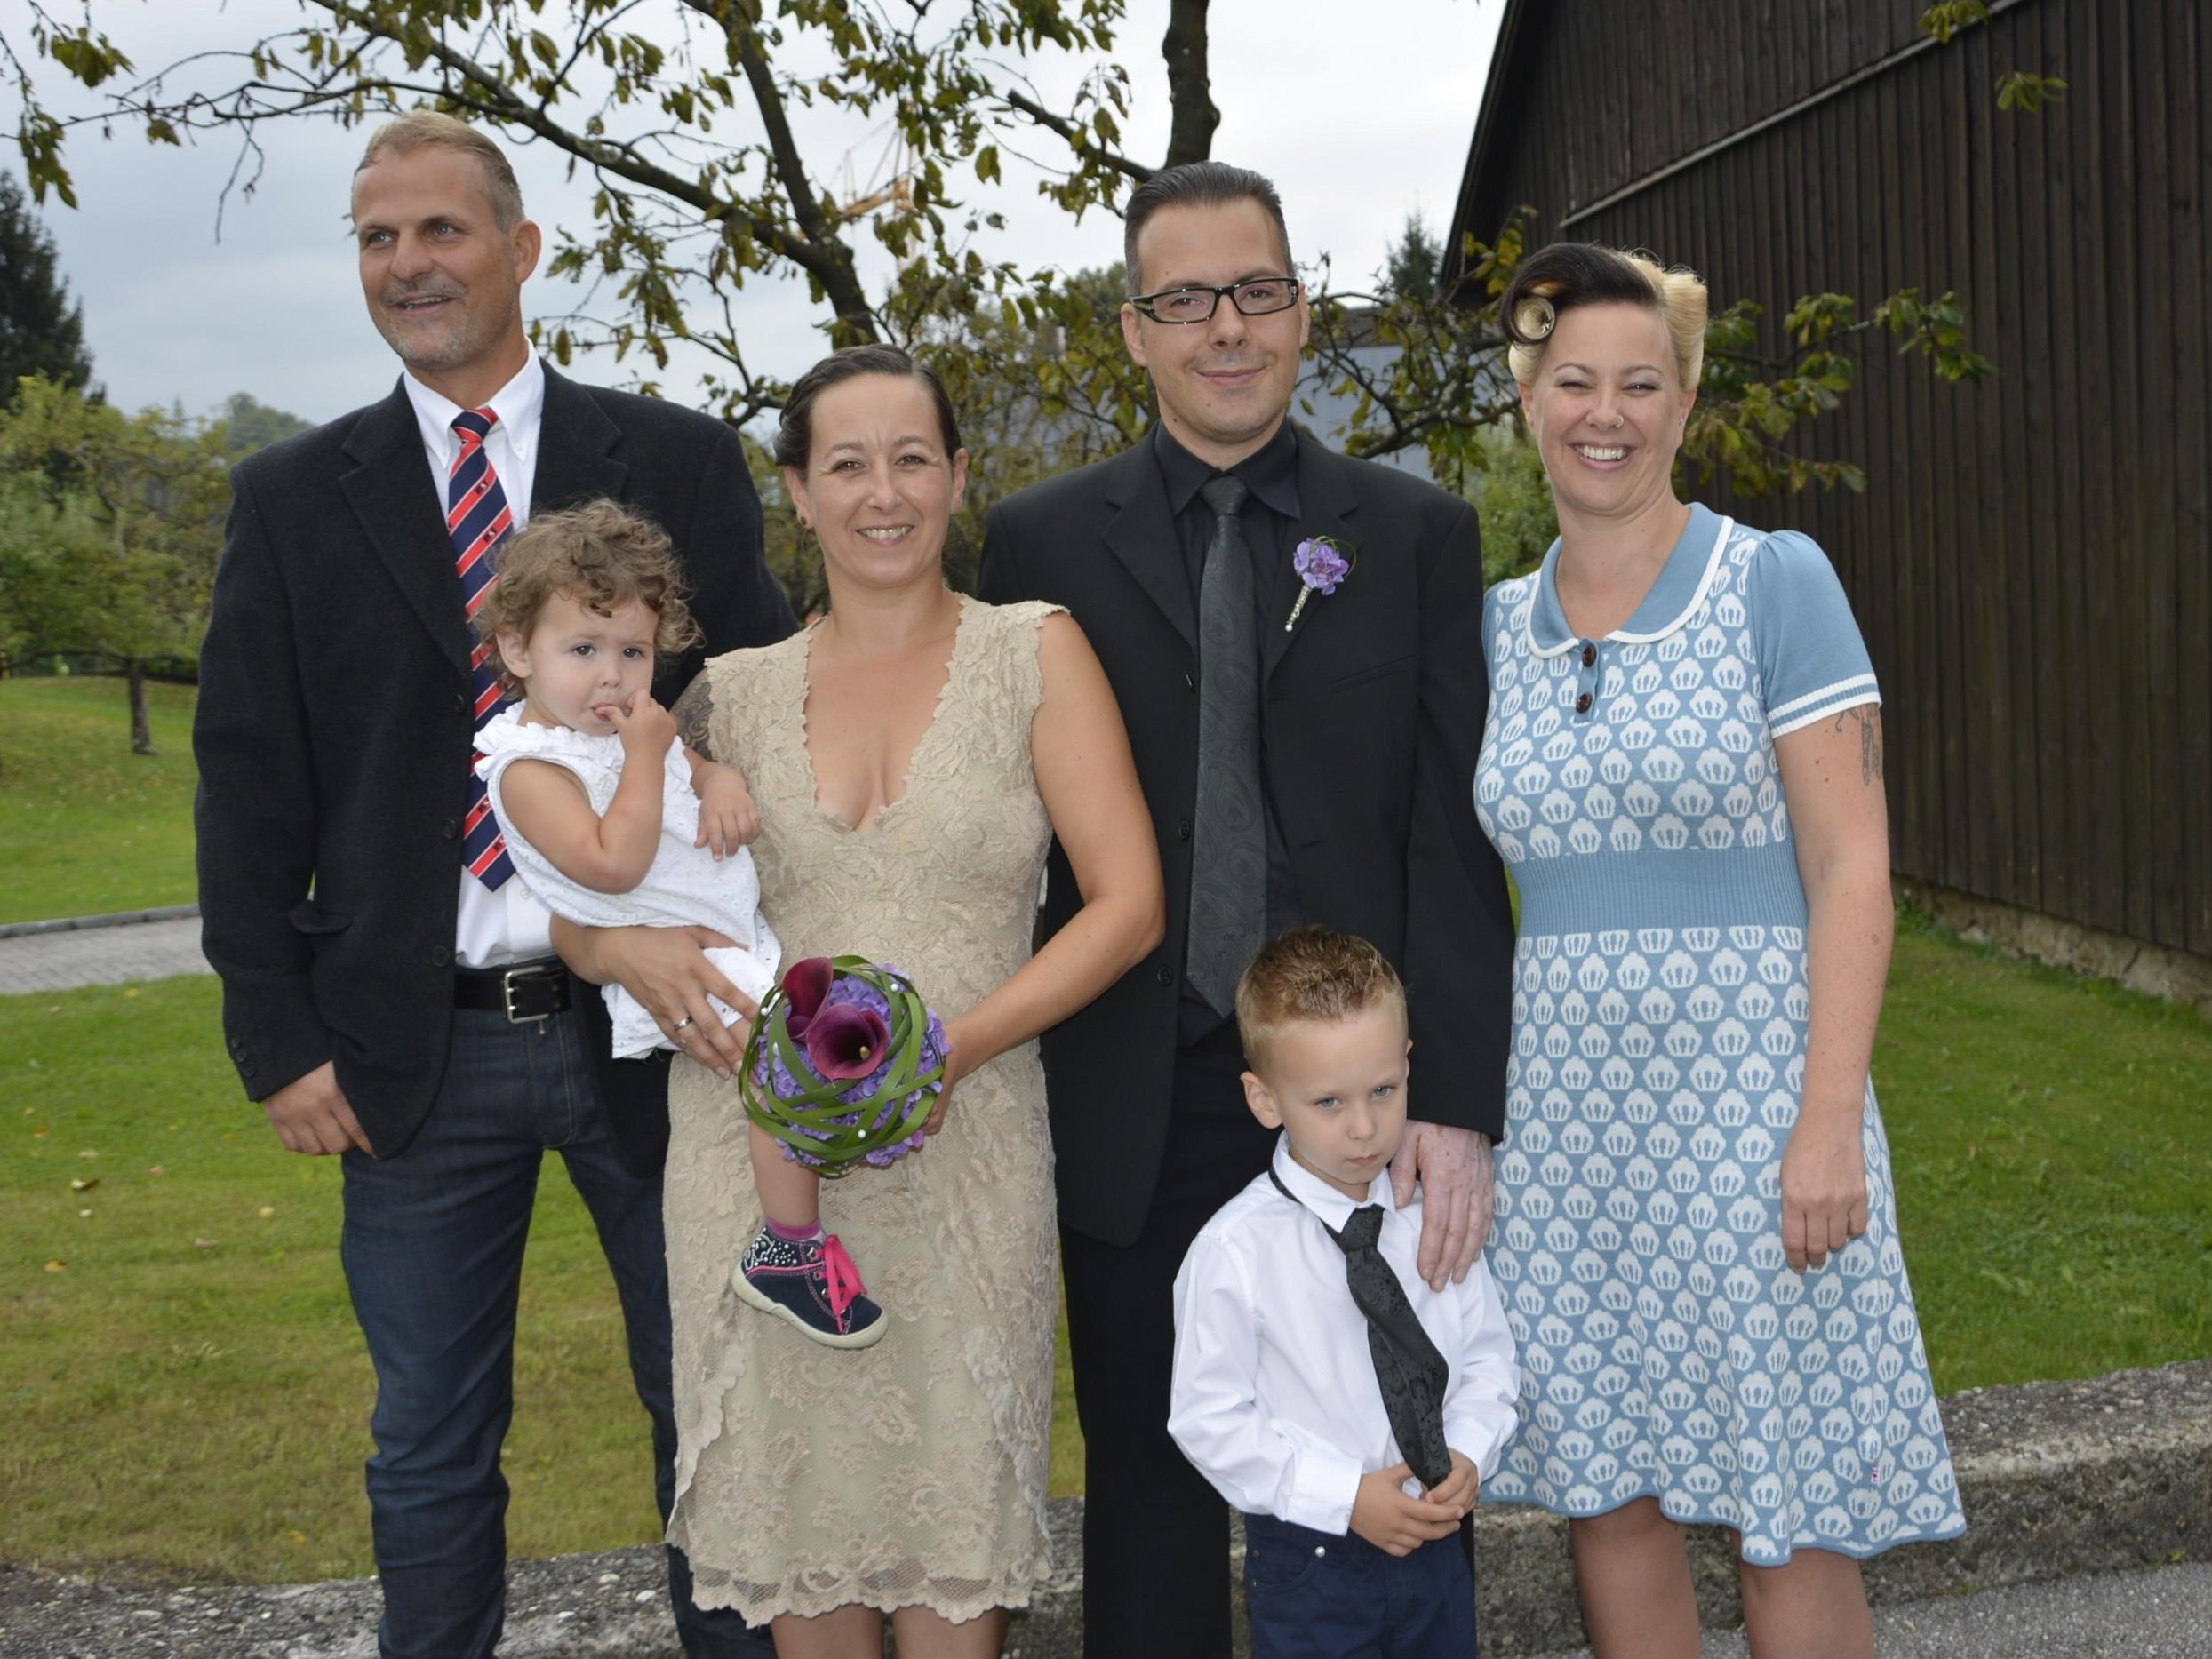 Das Brautpaar mit den Kindern und Trauzeugen bei der standesamtlichen Trauung in Wolfurt.